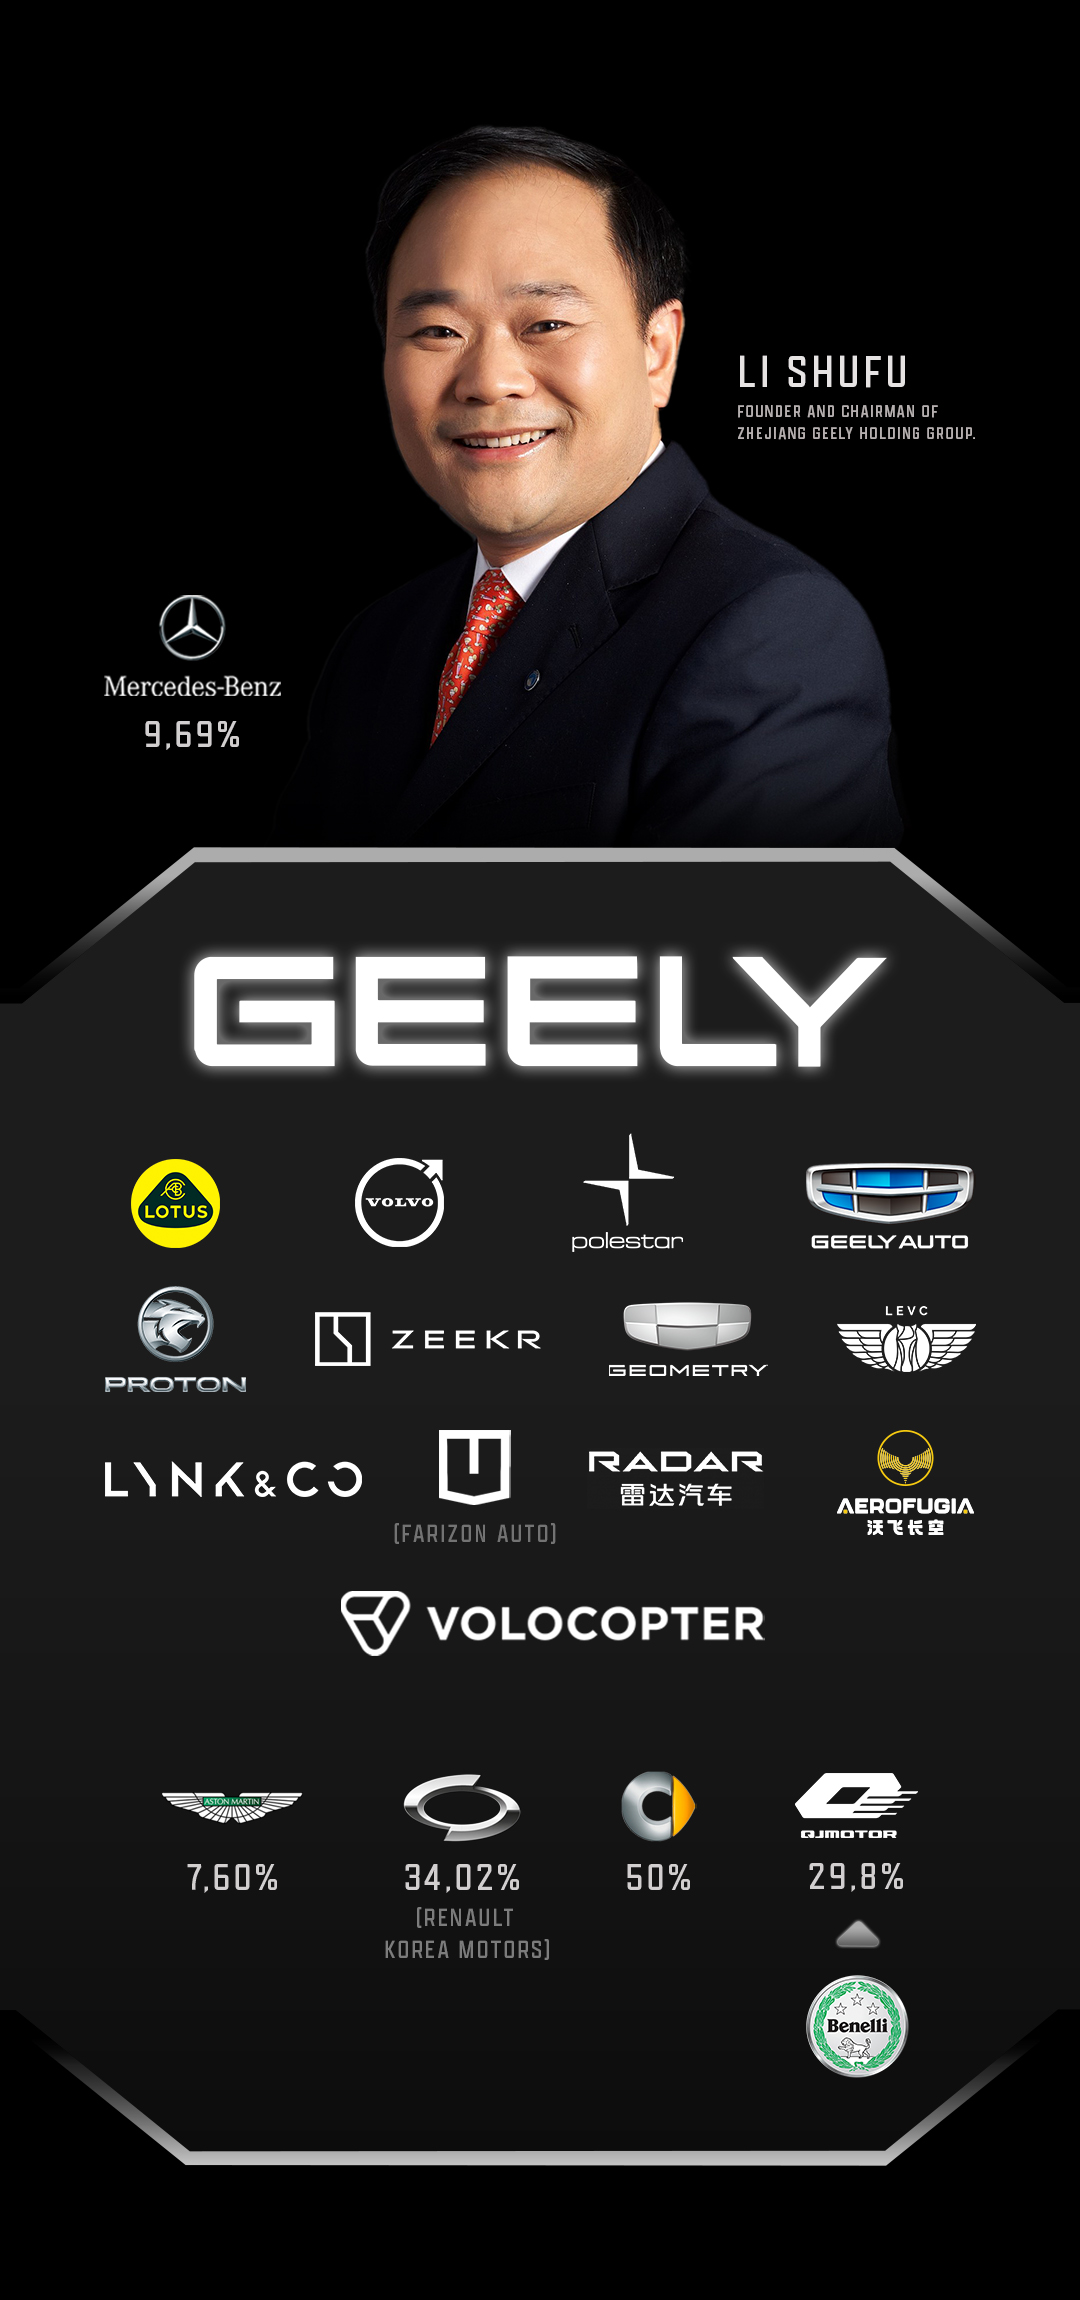 Li Shufu. Infografia com todos os fabricantes de veículos integrados na Geely e com os outros onde detém participações.